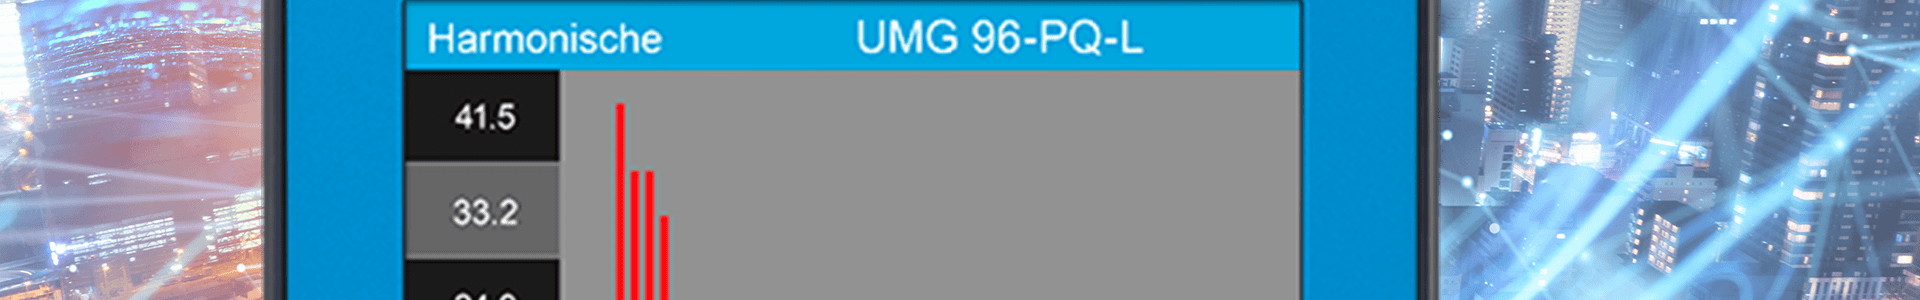 UMG 96-PQ-L